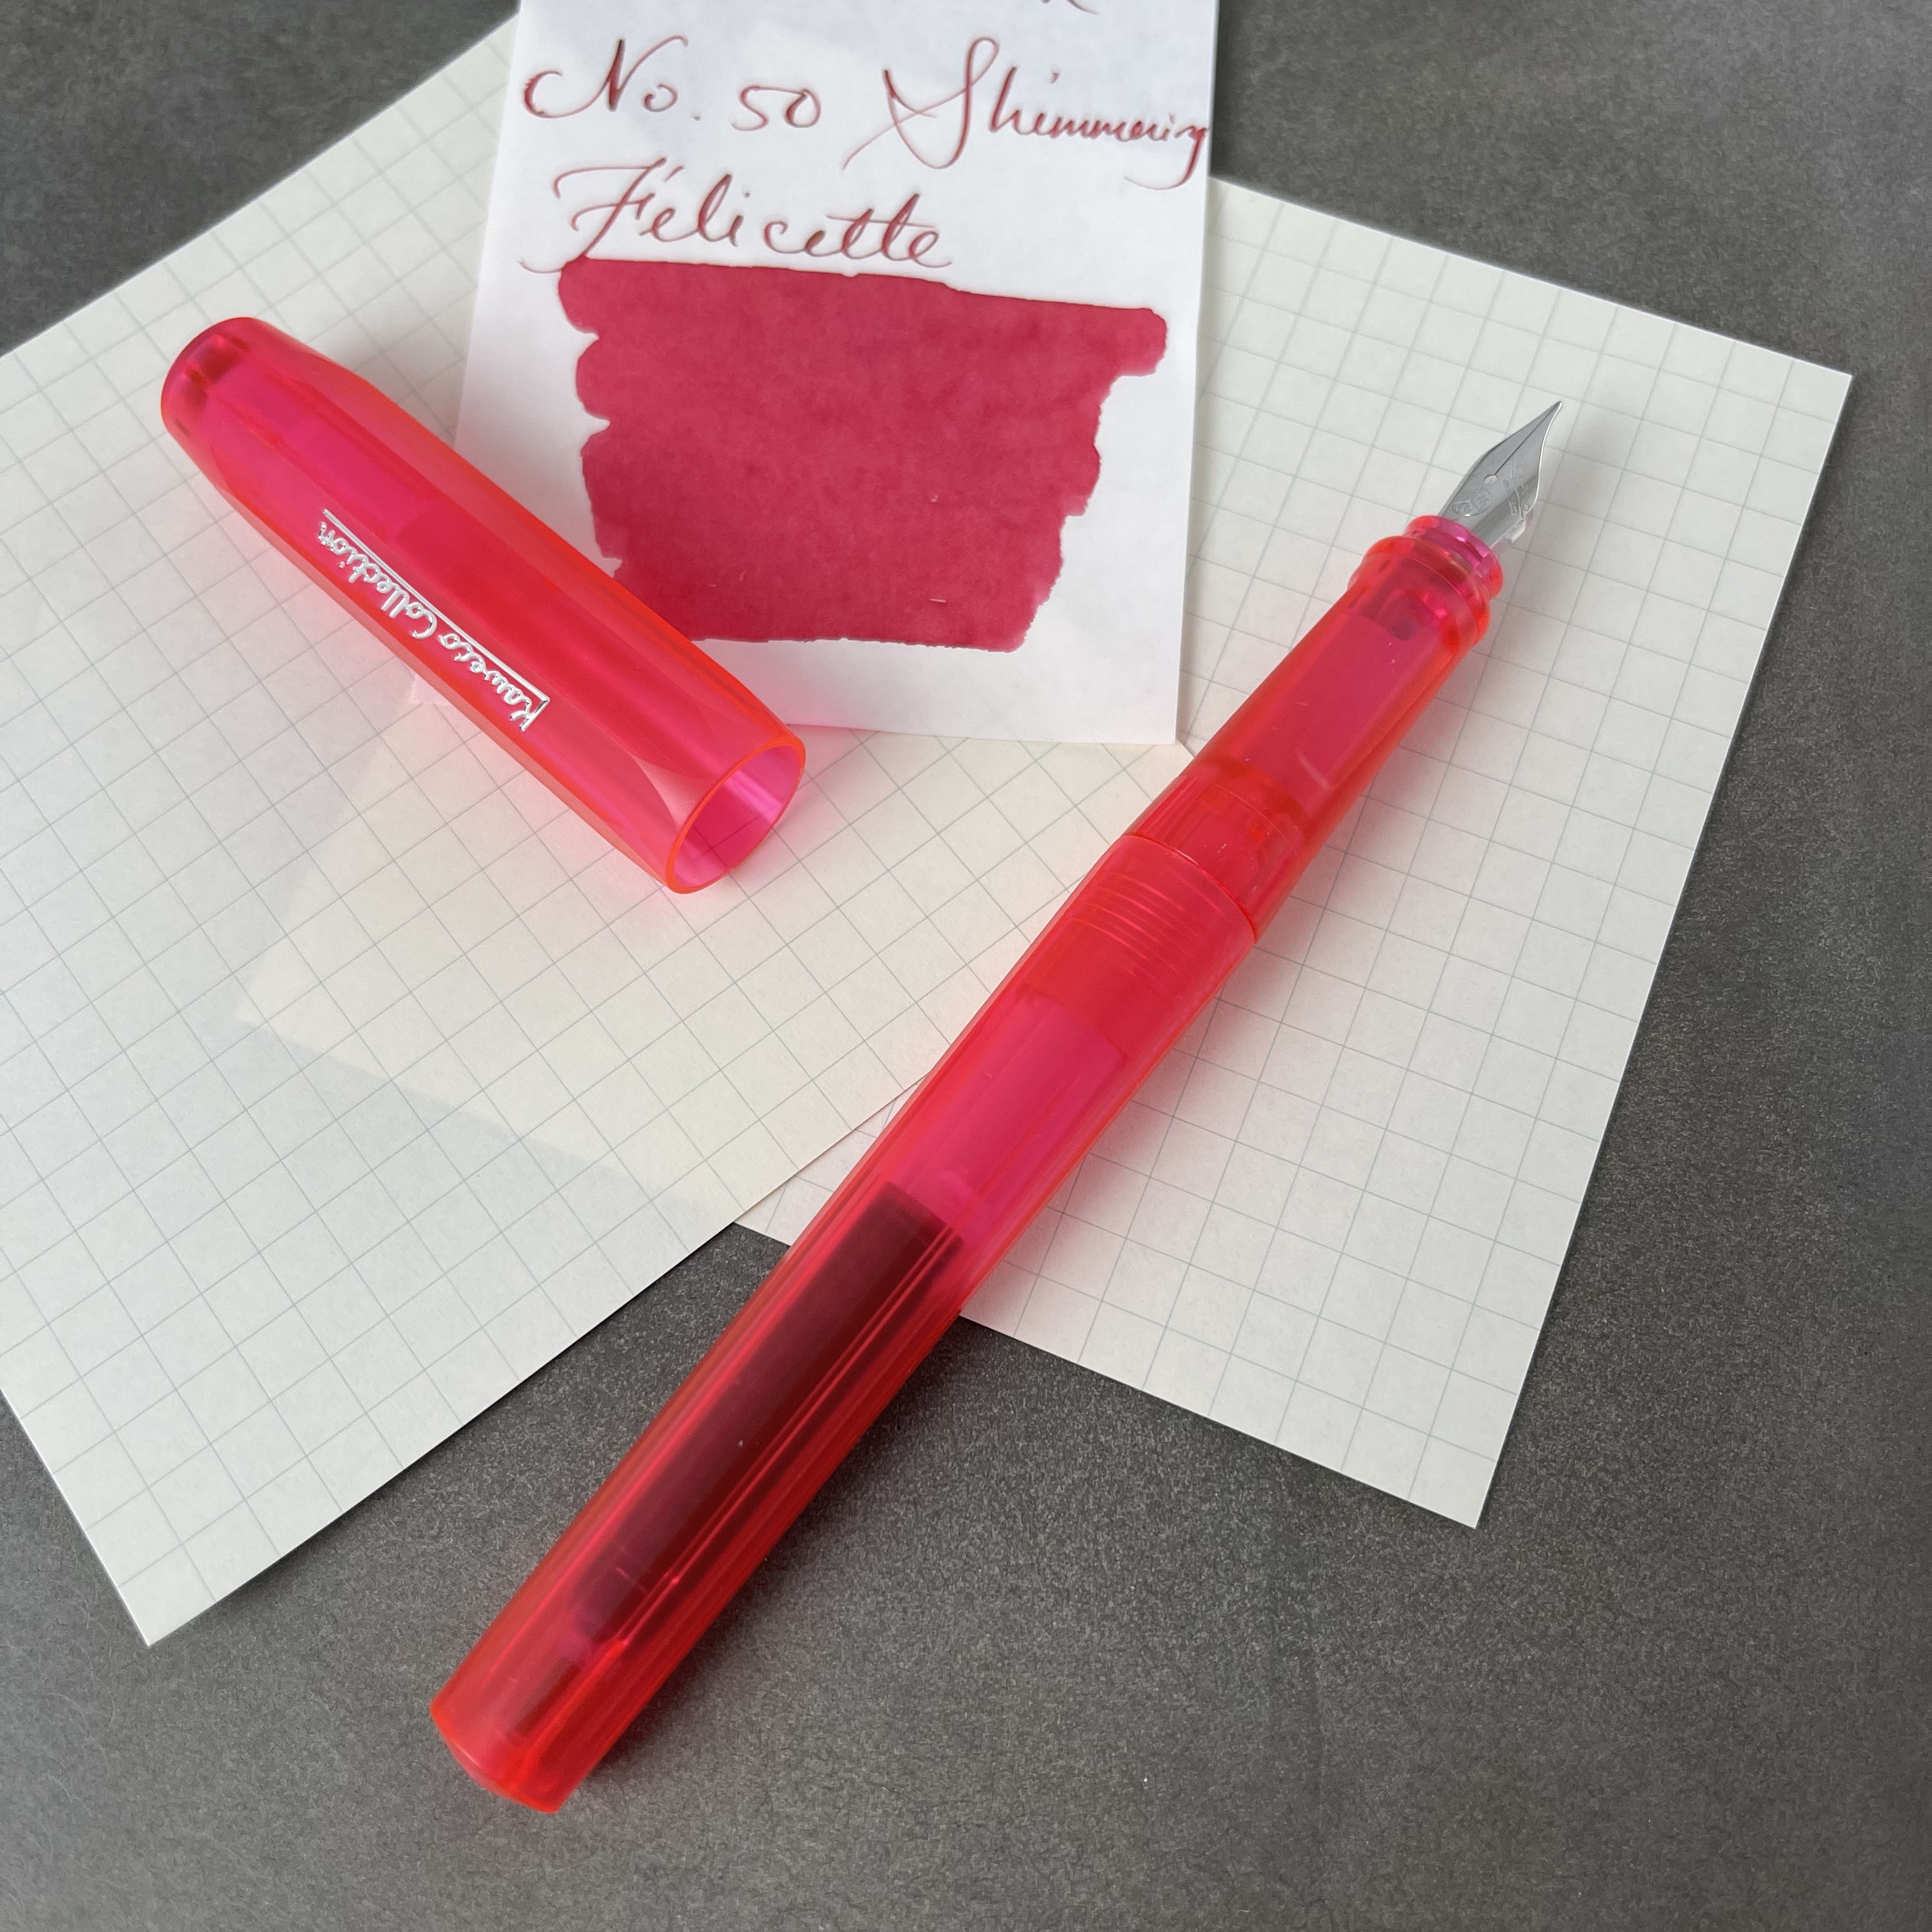 Kaweco Collection Perkeo Fountain Pen Infrared – The Pen Counter